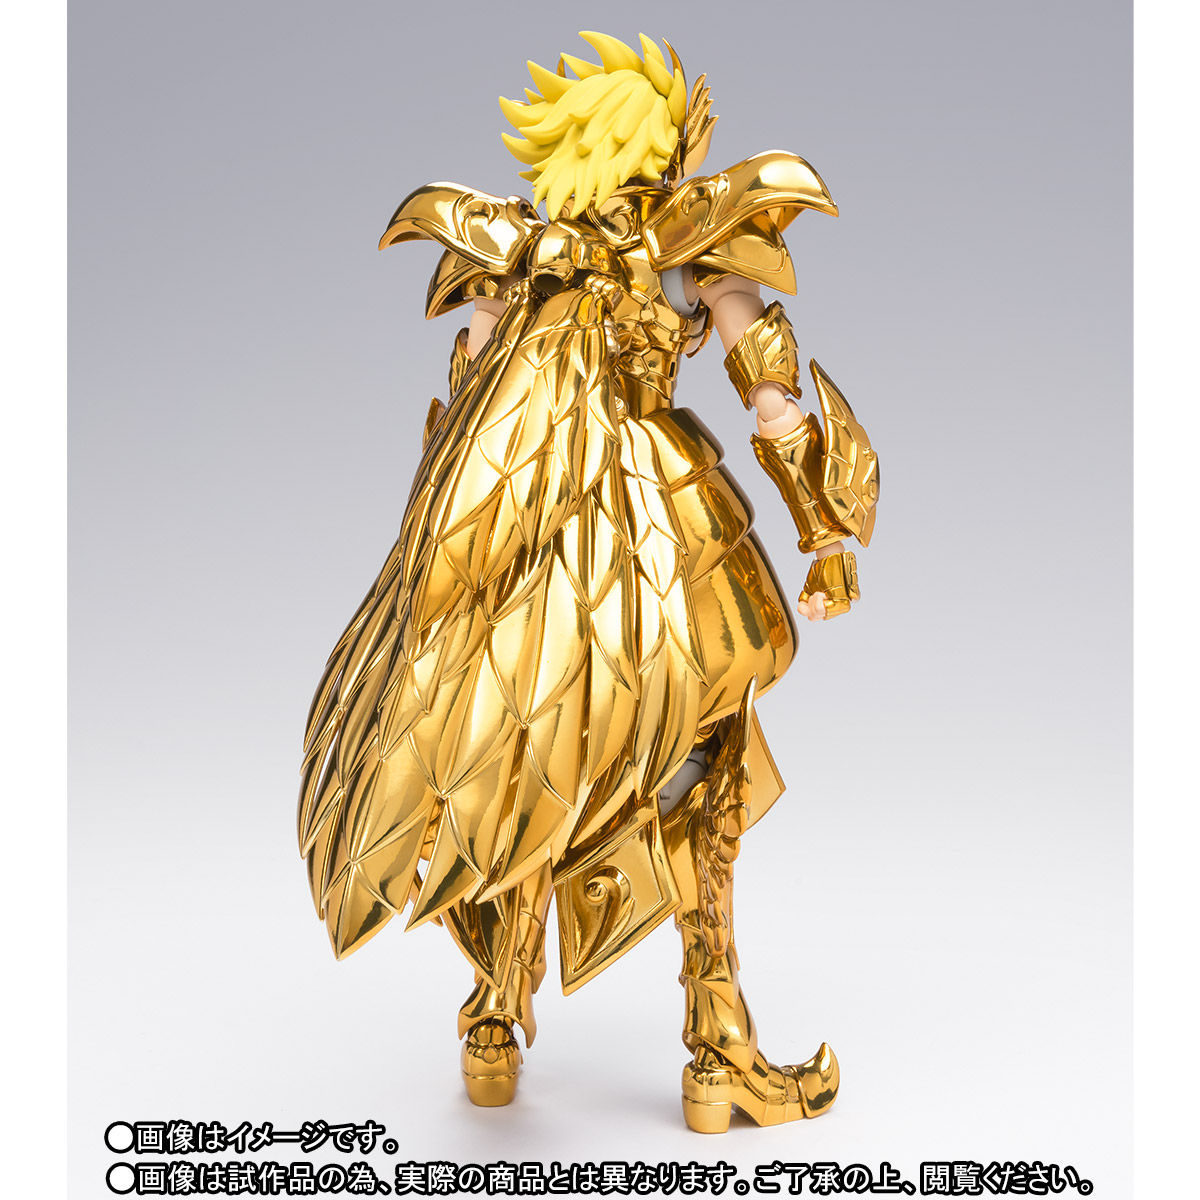 聖闘士聖衣神話EX 十三番目の黄金聖闘士台座にスレとキズあり